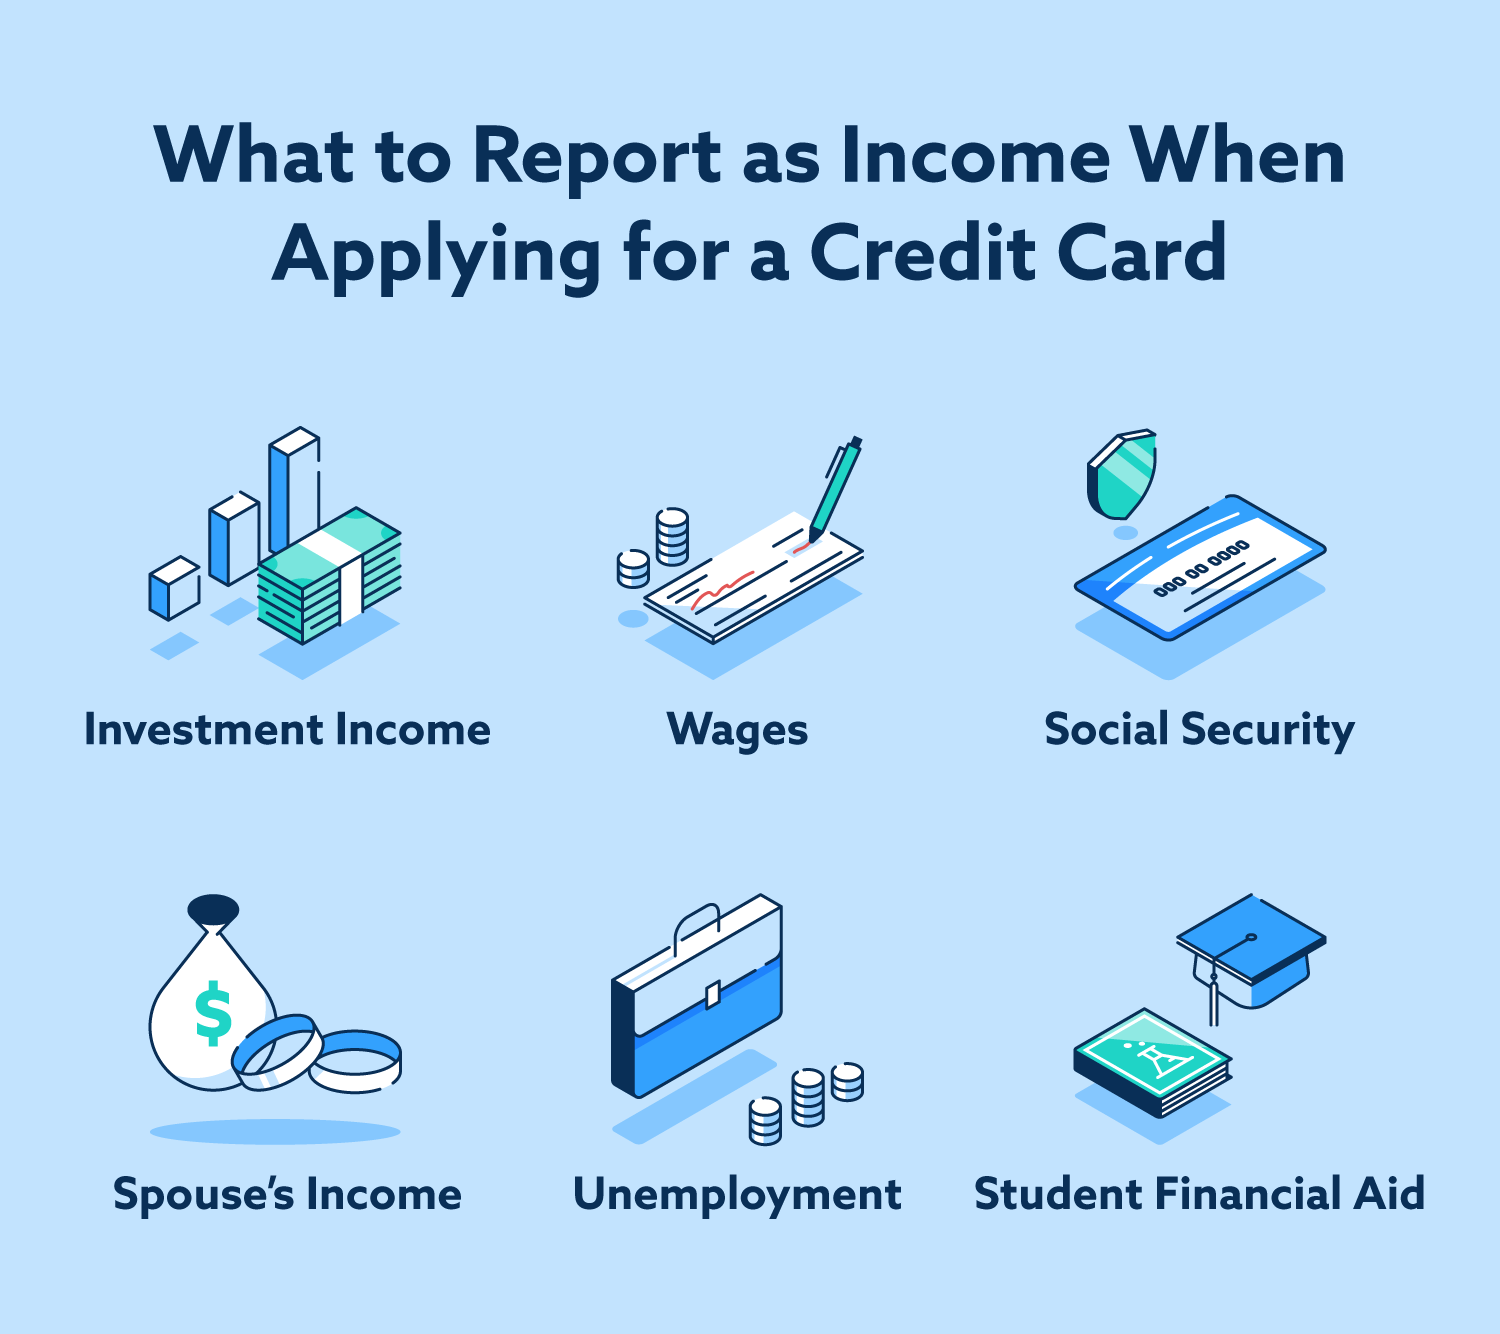 Al solicitar una tarjeta de crédito, puede informar los ingresos por inversiones, los salarios, la seguridad social, los ingresos de su cónyuge, el desempleo y la ayuda financiera para estudiantes como fuentes de ingresos.